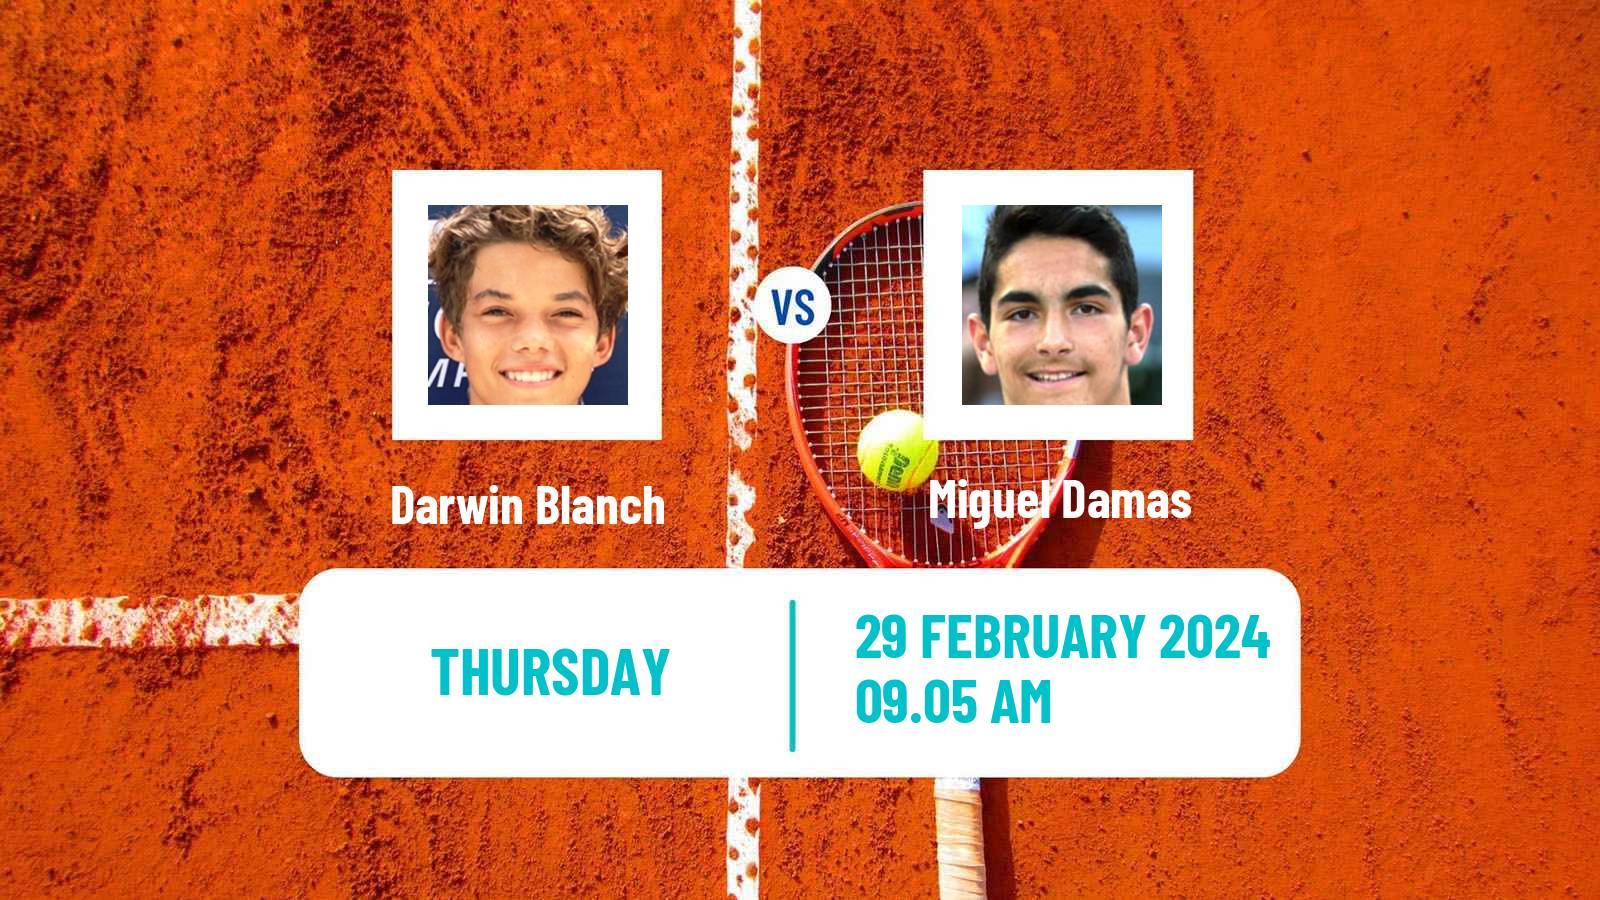 Tennis ITF M15 Villena 2 Men Darwin Blanch - Miguel Damas